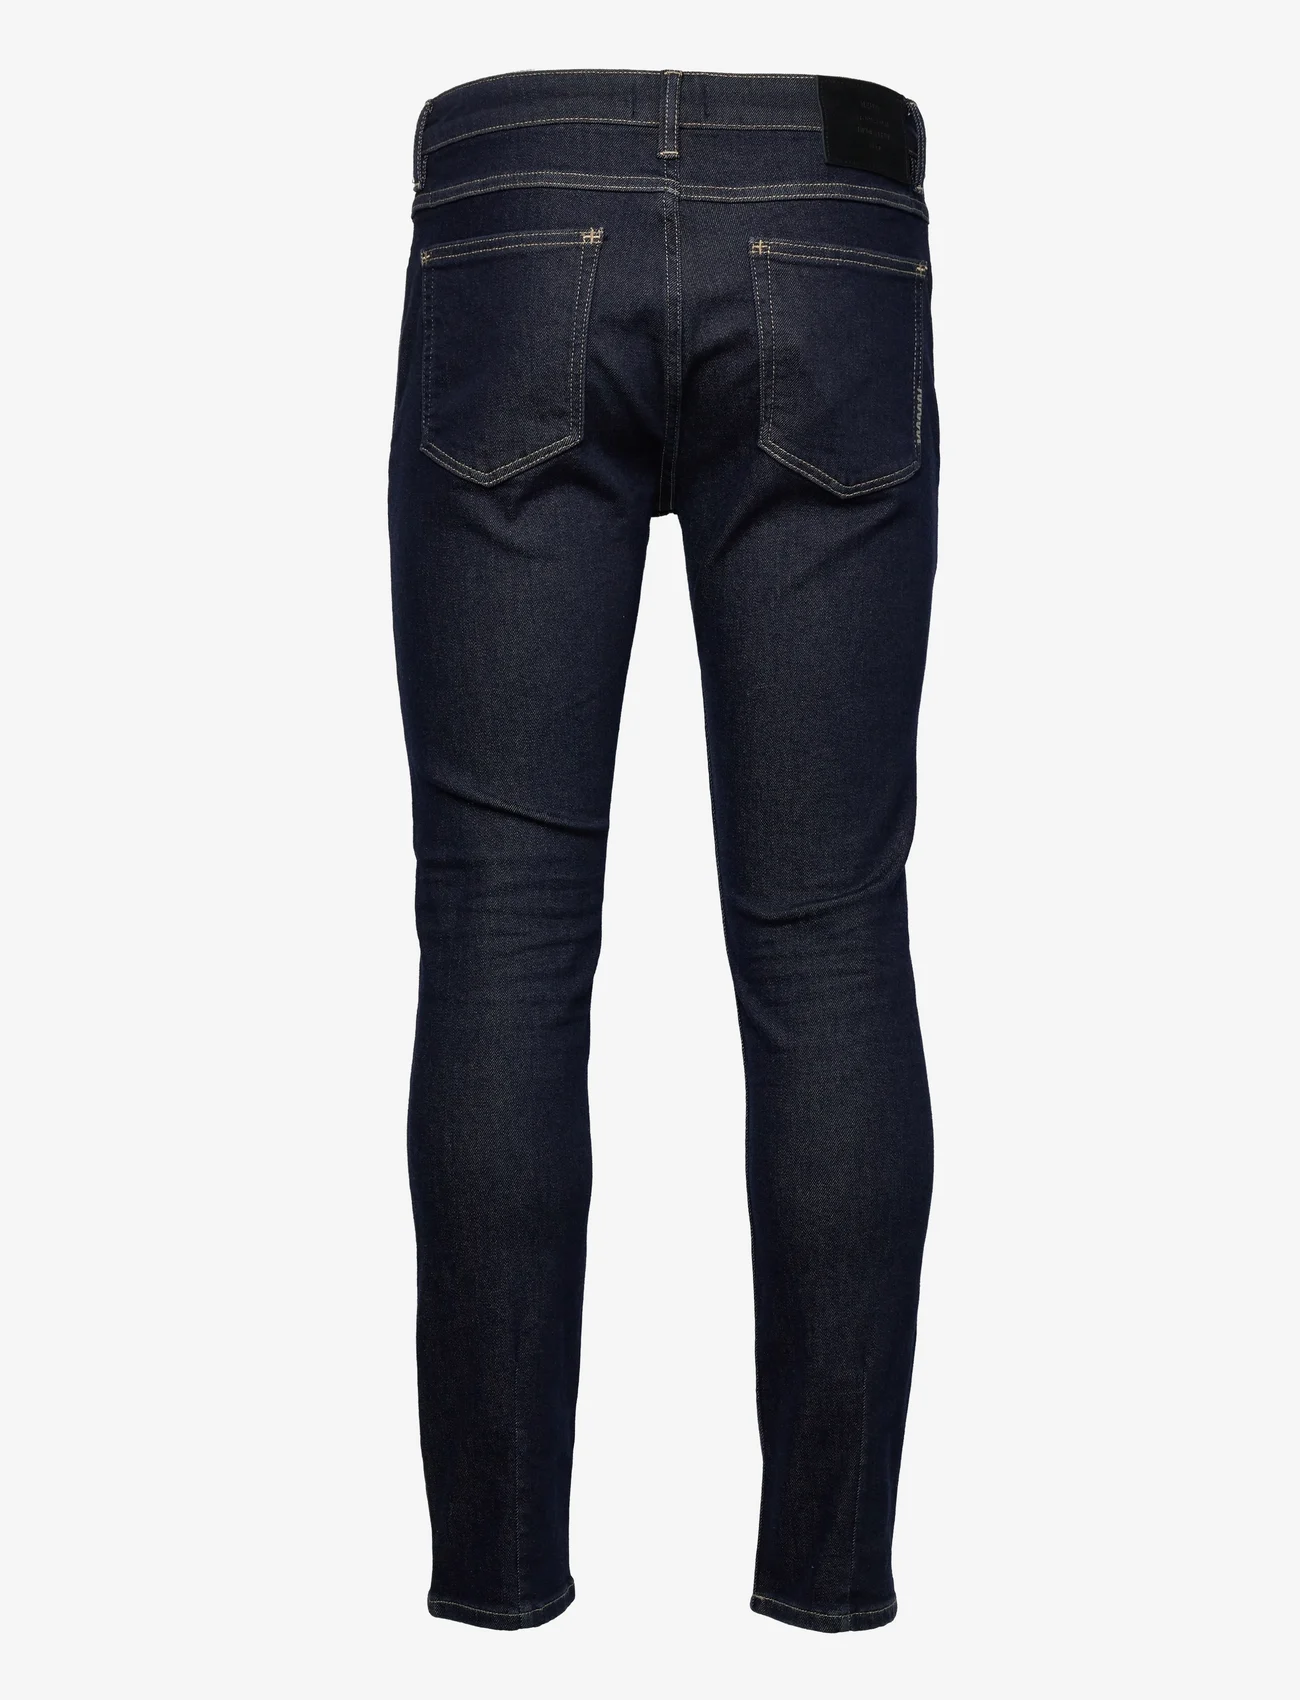 NEUW - IGGY SKINNY ATELIER - skinny jeans - organic dark blue - 1